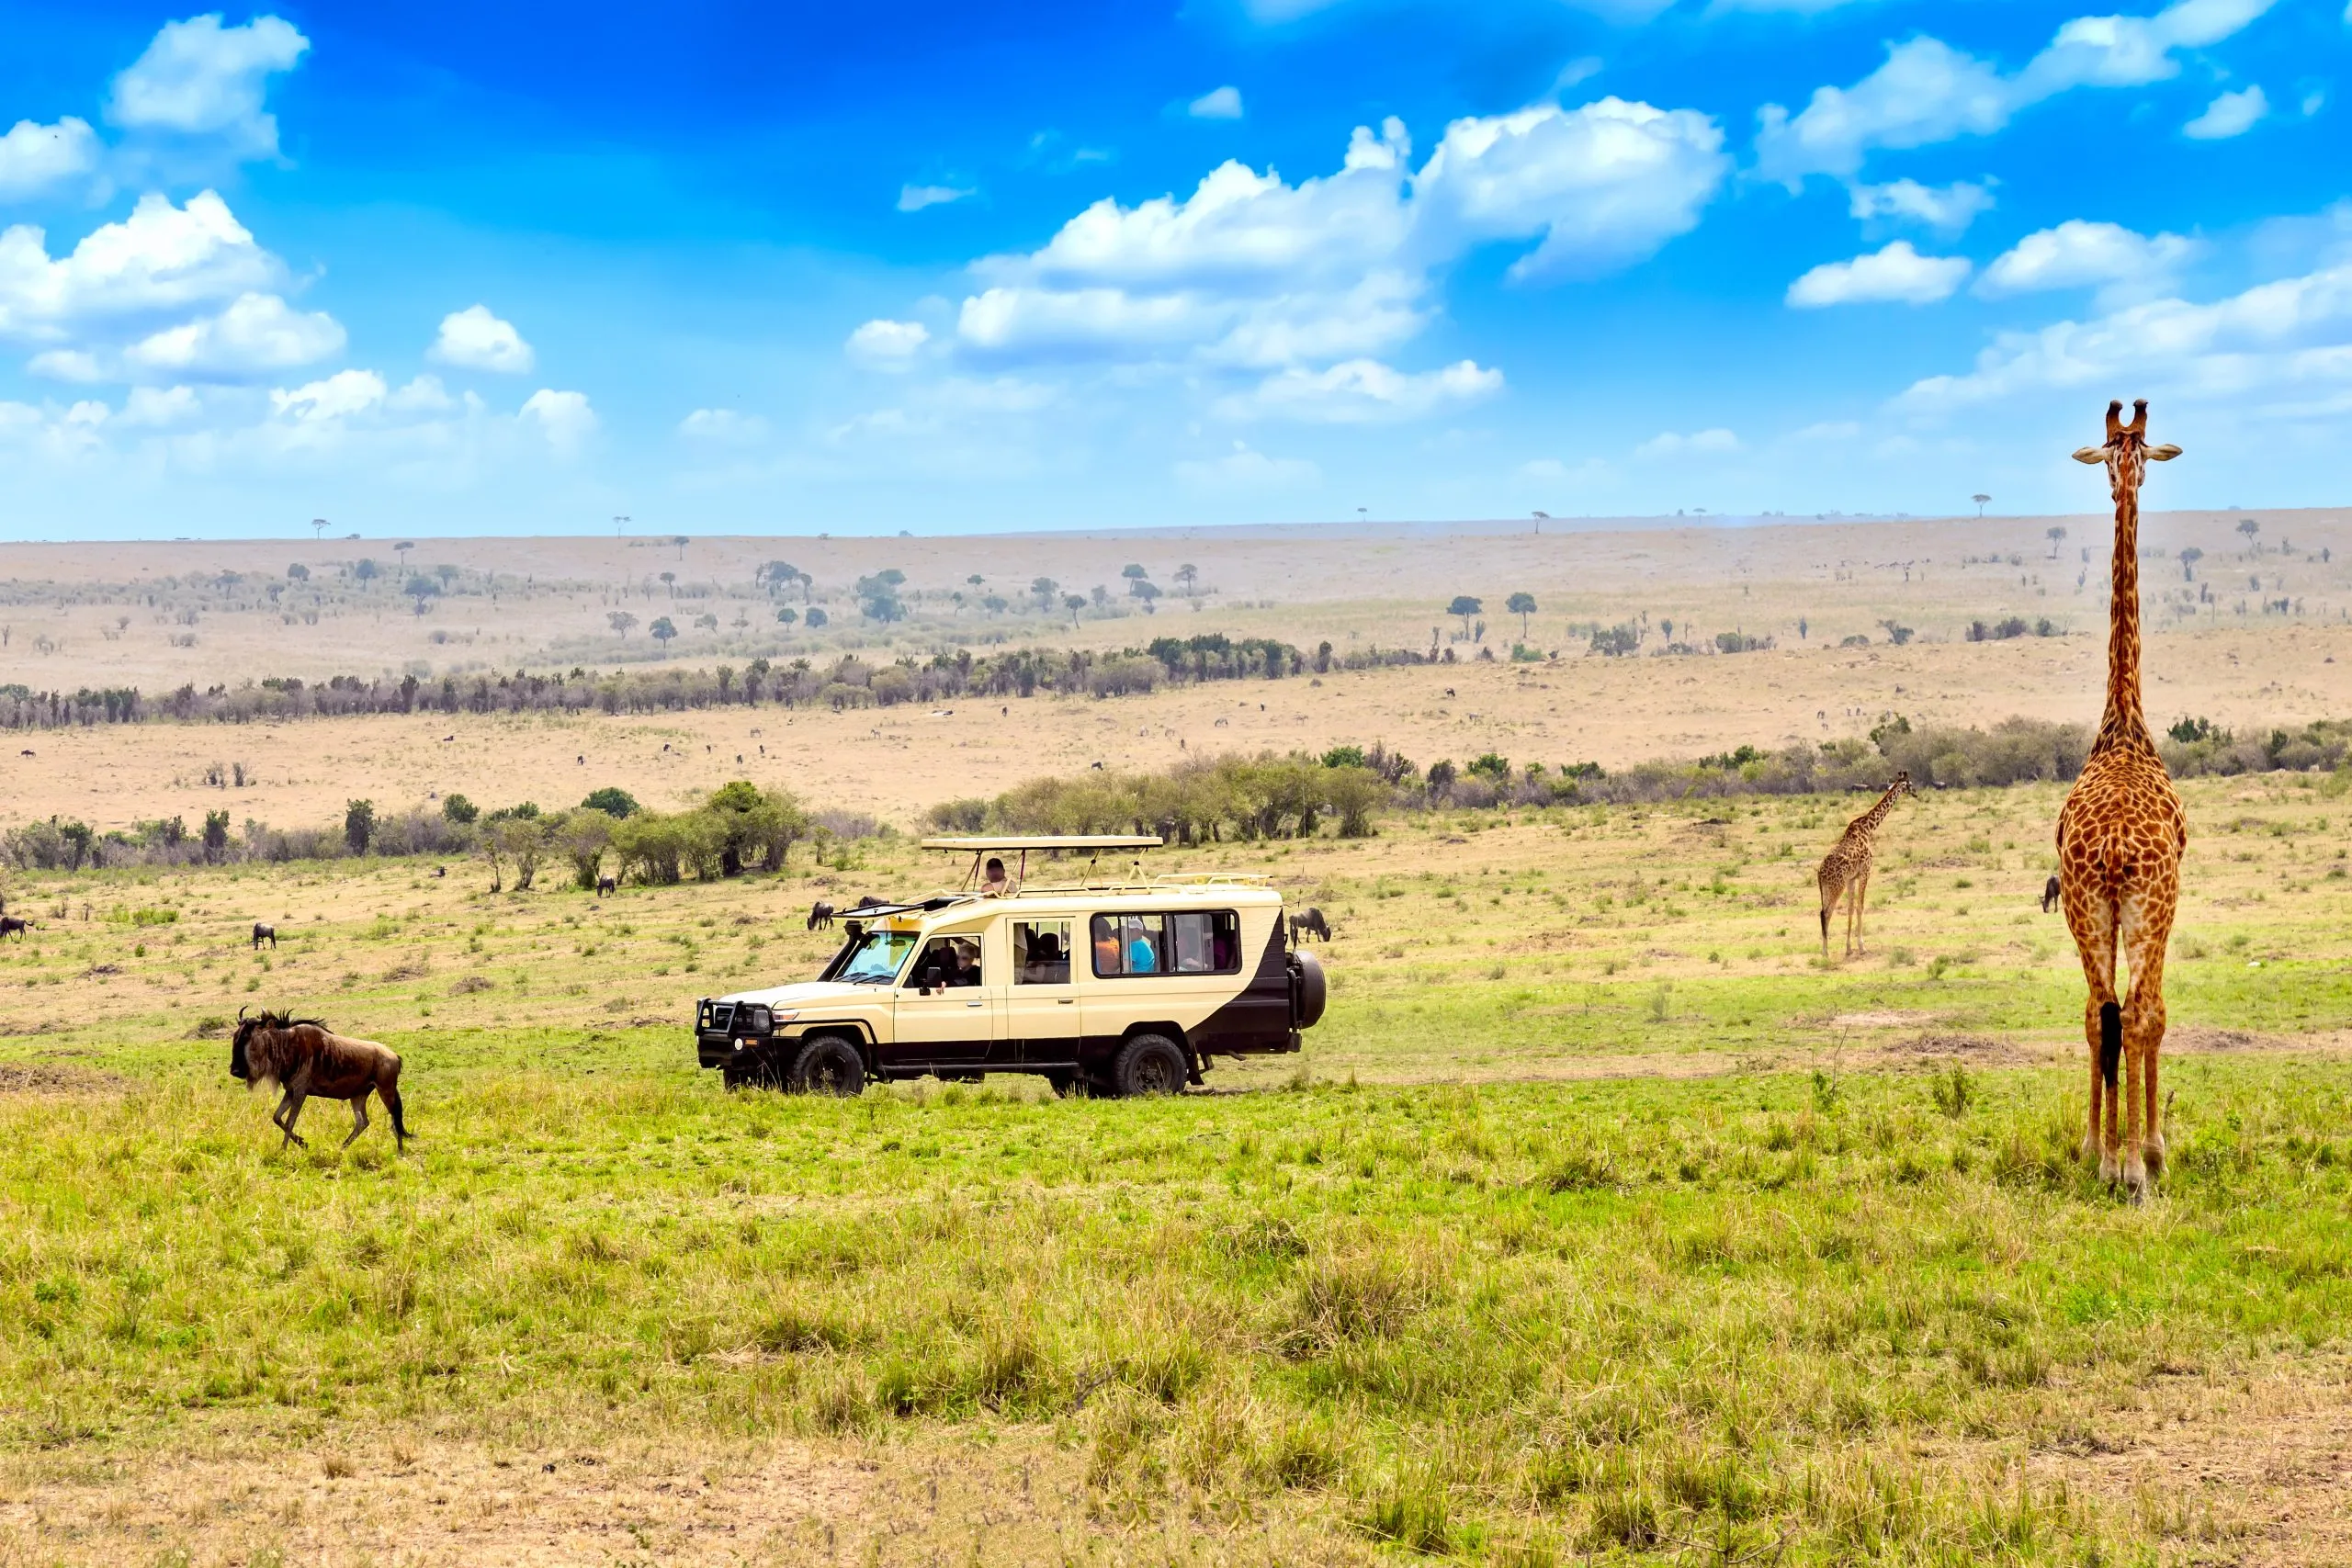 Girafa selvagem e gnu perto de um carro de safari no Parque Nacional Masai Mara, Quénia. Conceito de safari. Paisagem de viagem africana